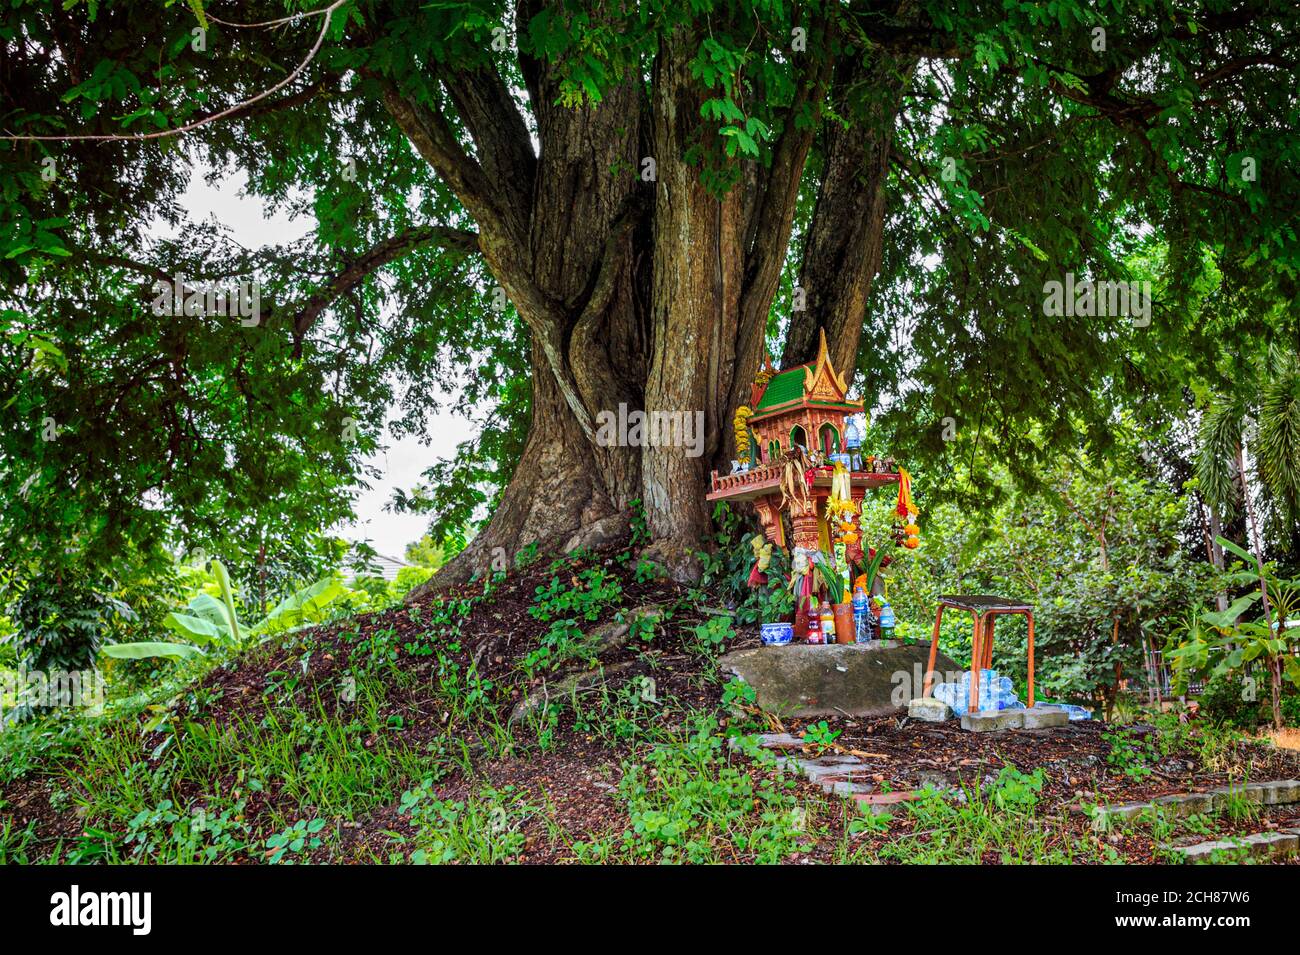 Une maison d'esprit sur terre monticule avec un immense arbre se tient derrière. Maison miniature thaïlandaise traditionnelle construite pour l'esprit de gardien de résider. Banque D'Images